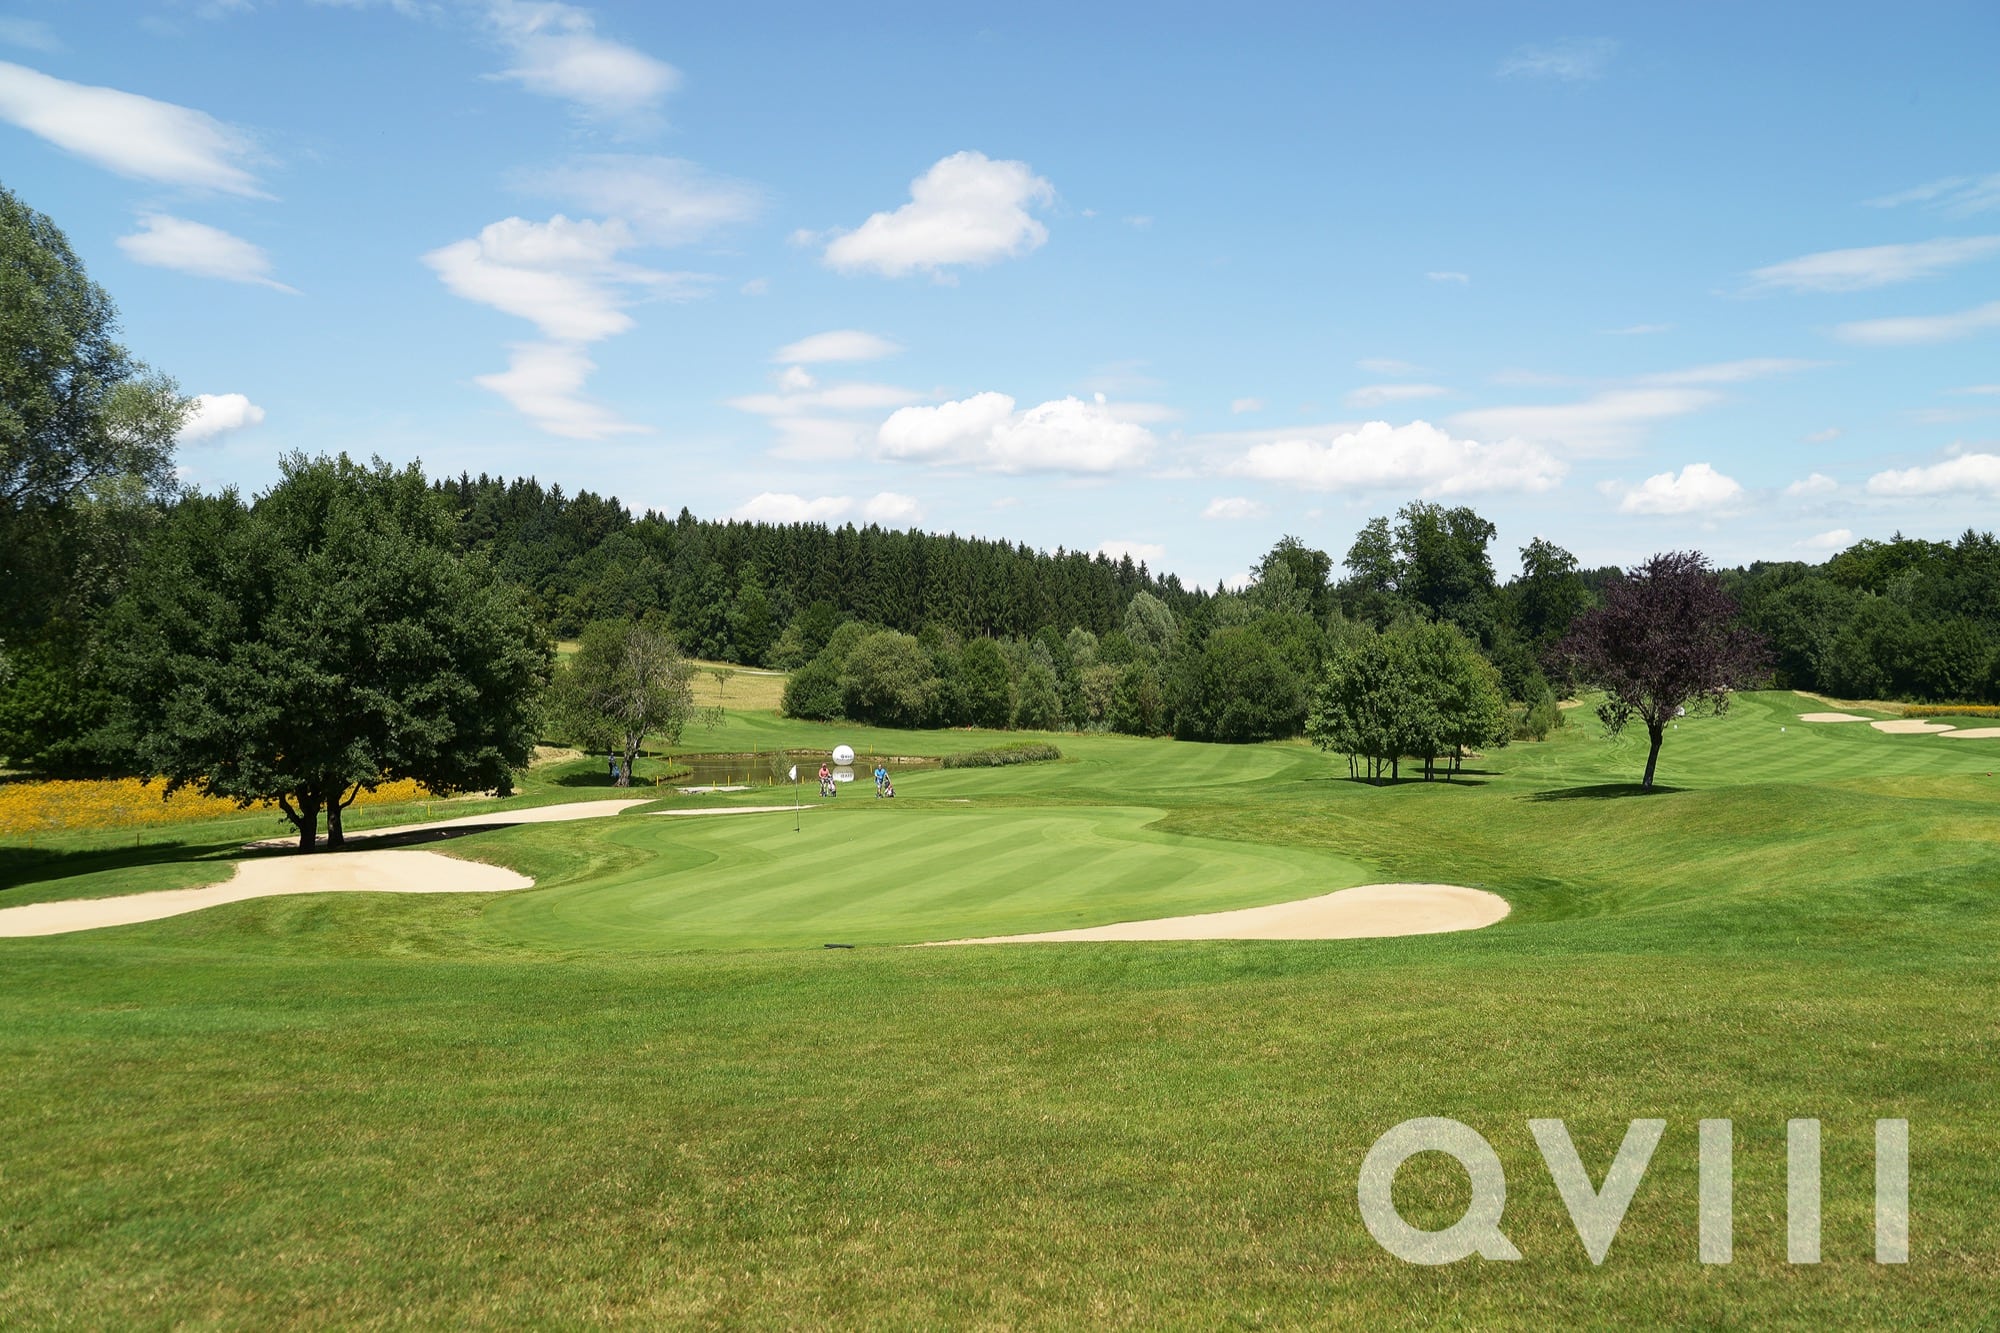 QVIII_Golfturnier_2017-DSC_1213